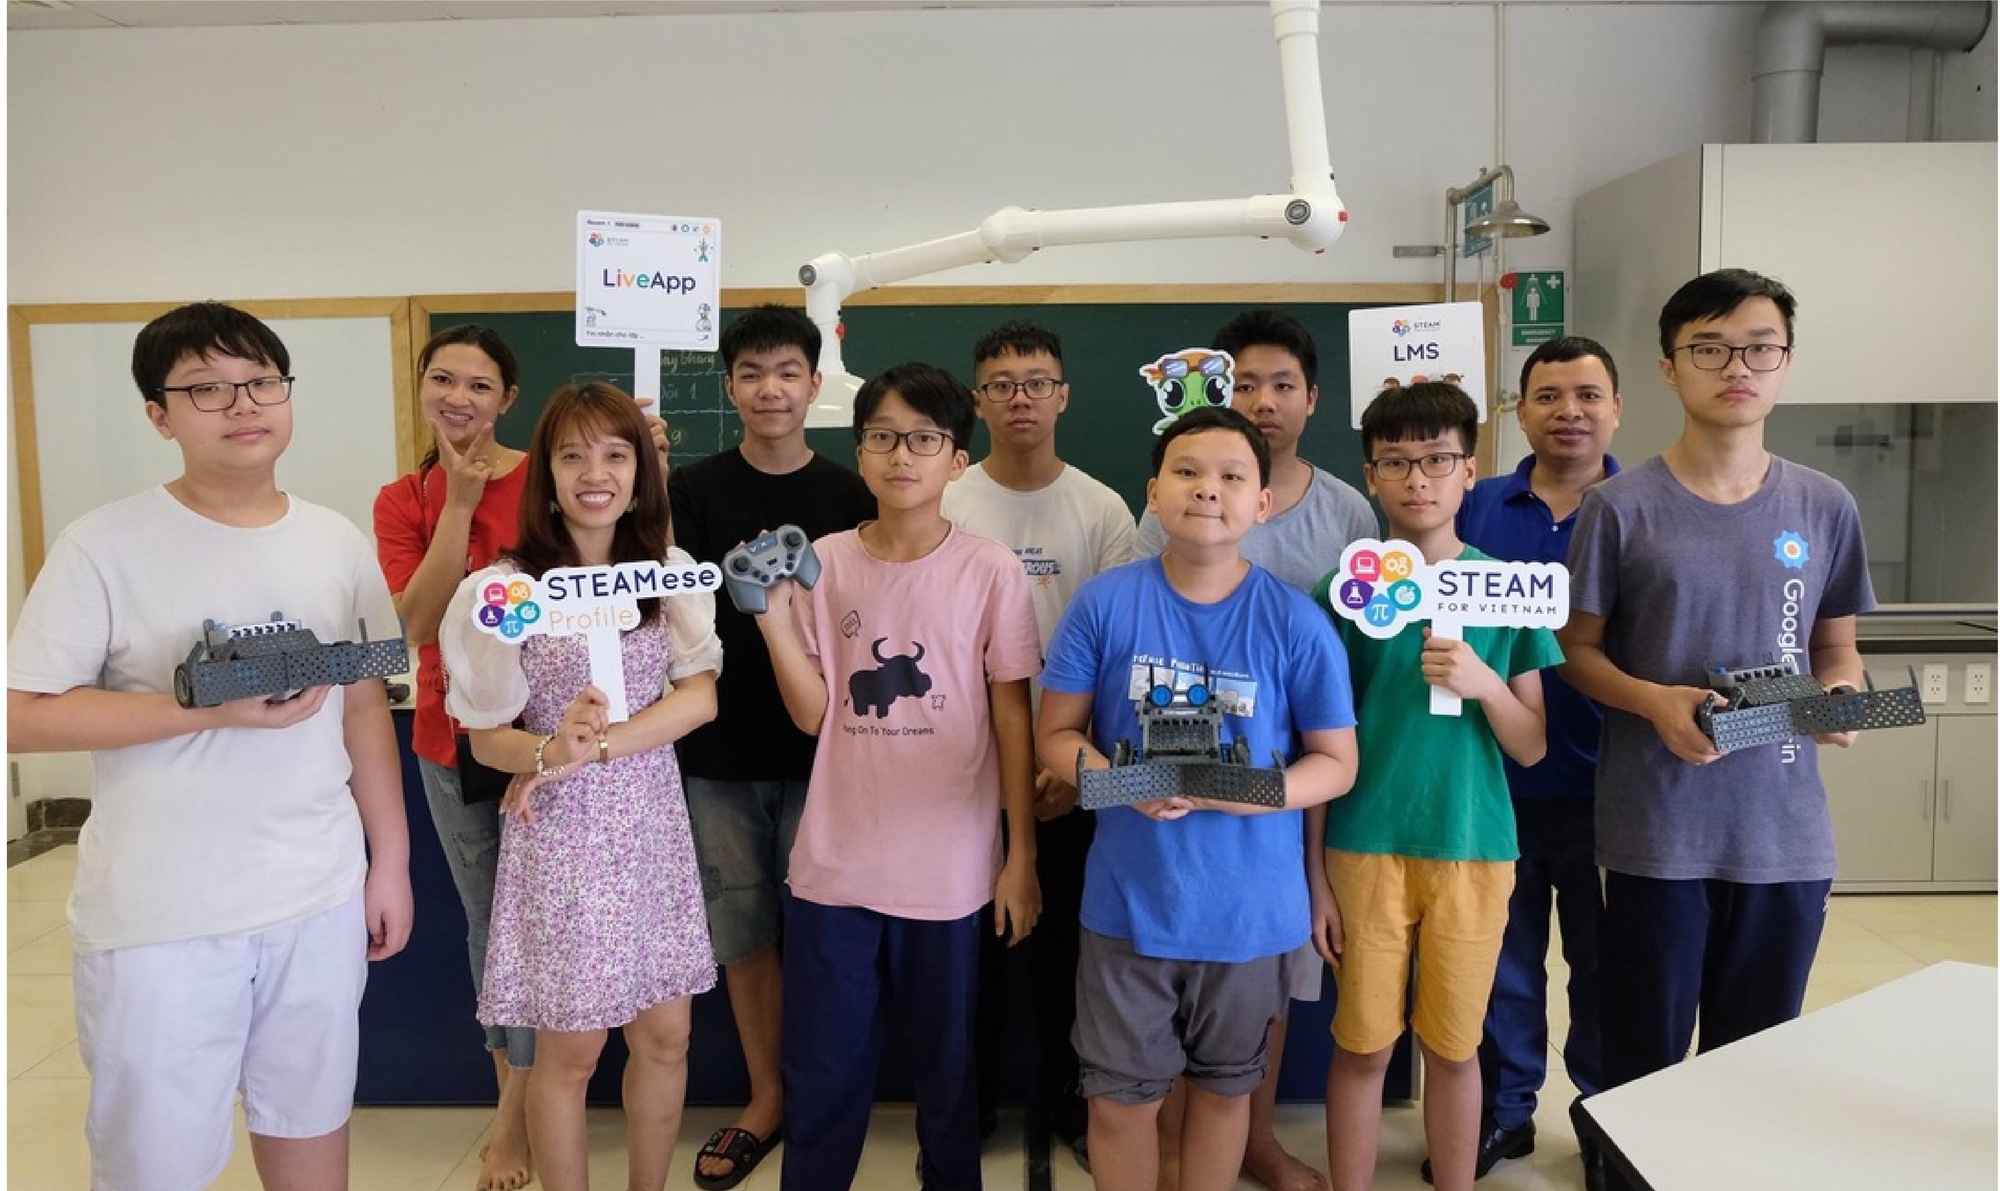 ‘Startup giáo dục’ kỳ lạ: Thiết kế như show truyền hình, mời chuyên gia NASA, Facebook, Google, Microsoft… dạy lập trình miễn phí cho trẻ em Việt Nam - Ảnh 3.